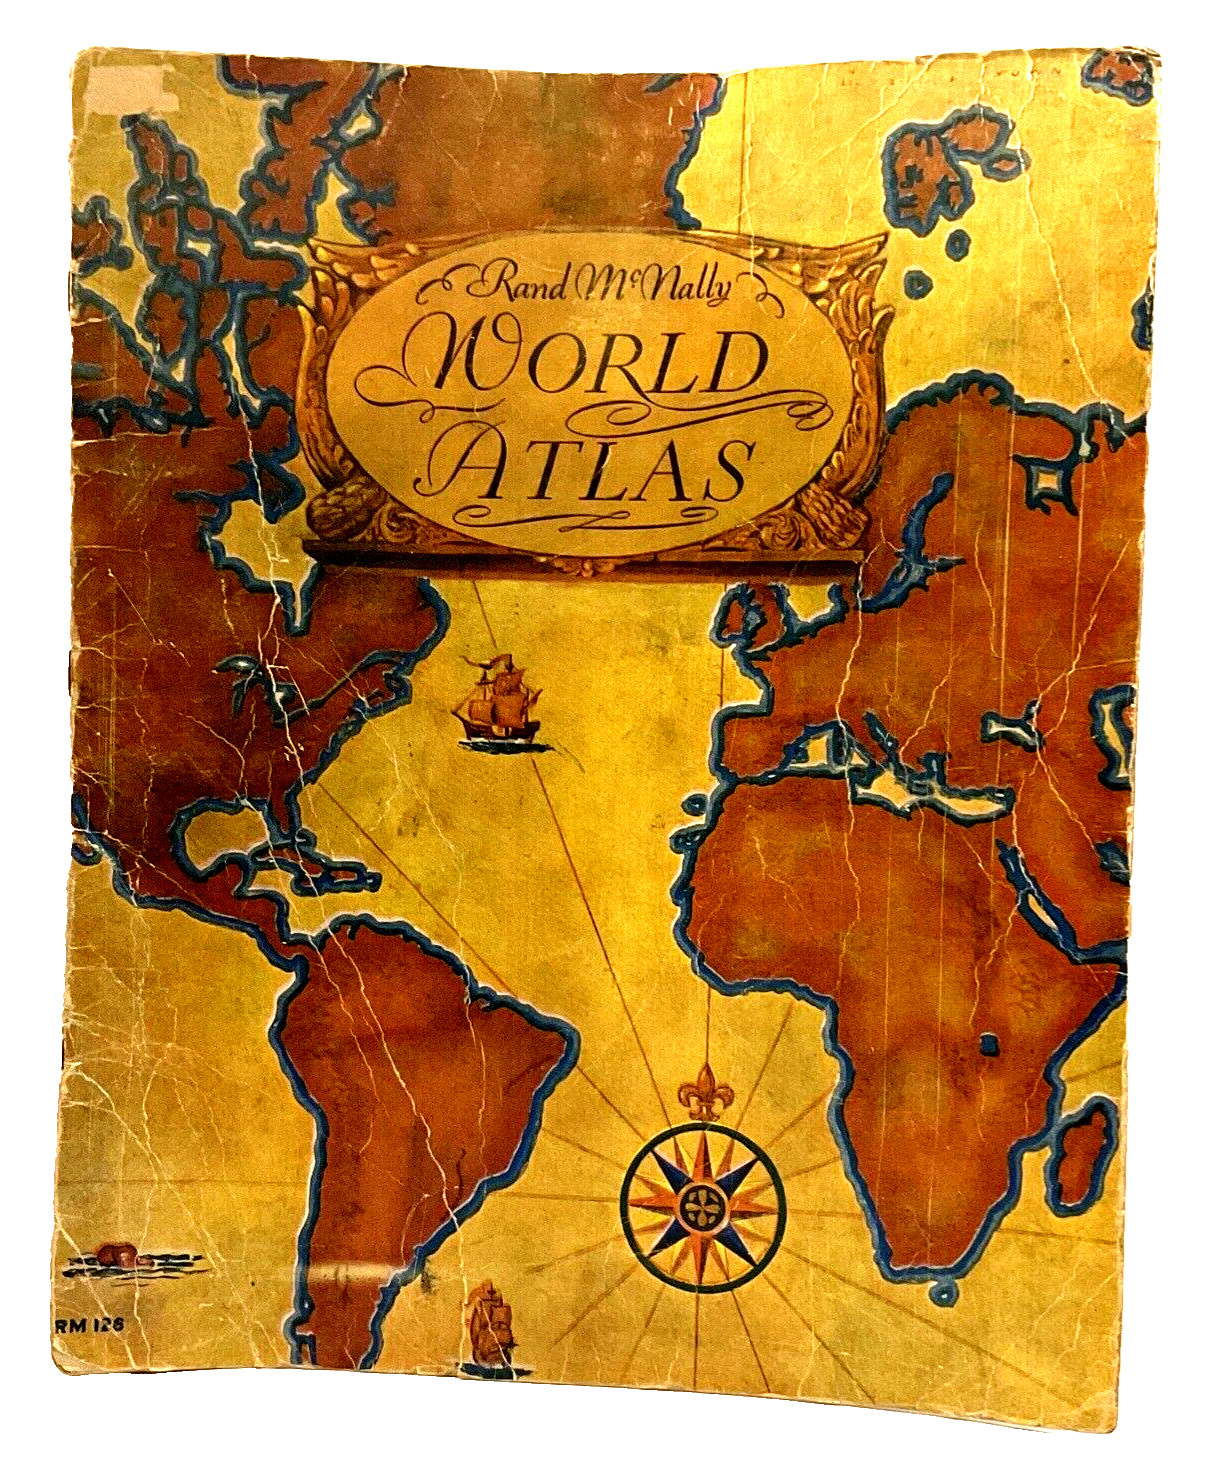 Vintage World Atlas Rand McNally Softcover  RM 126 Color Maps 1935 USA